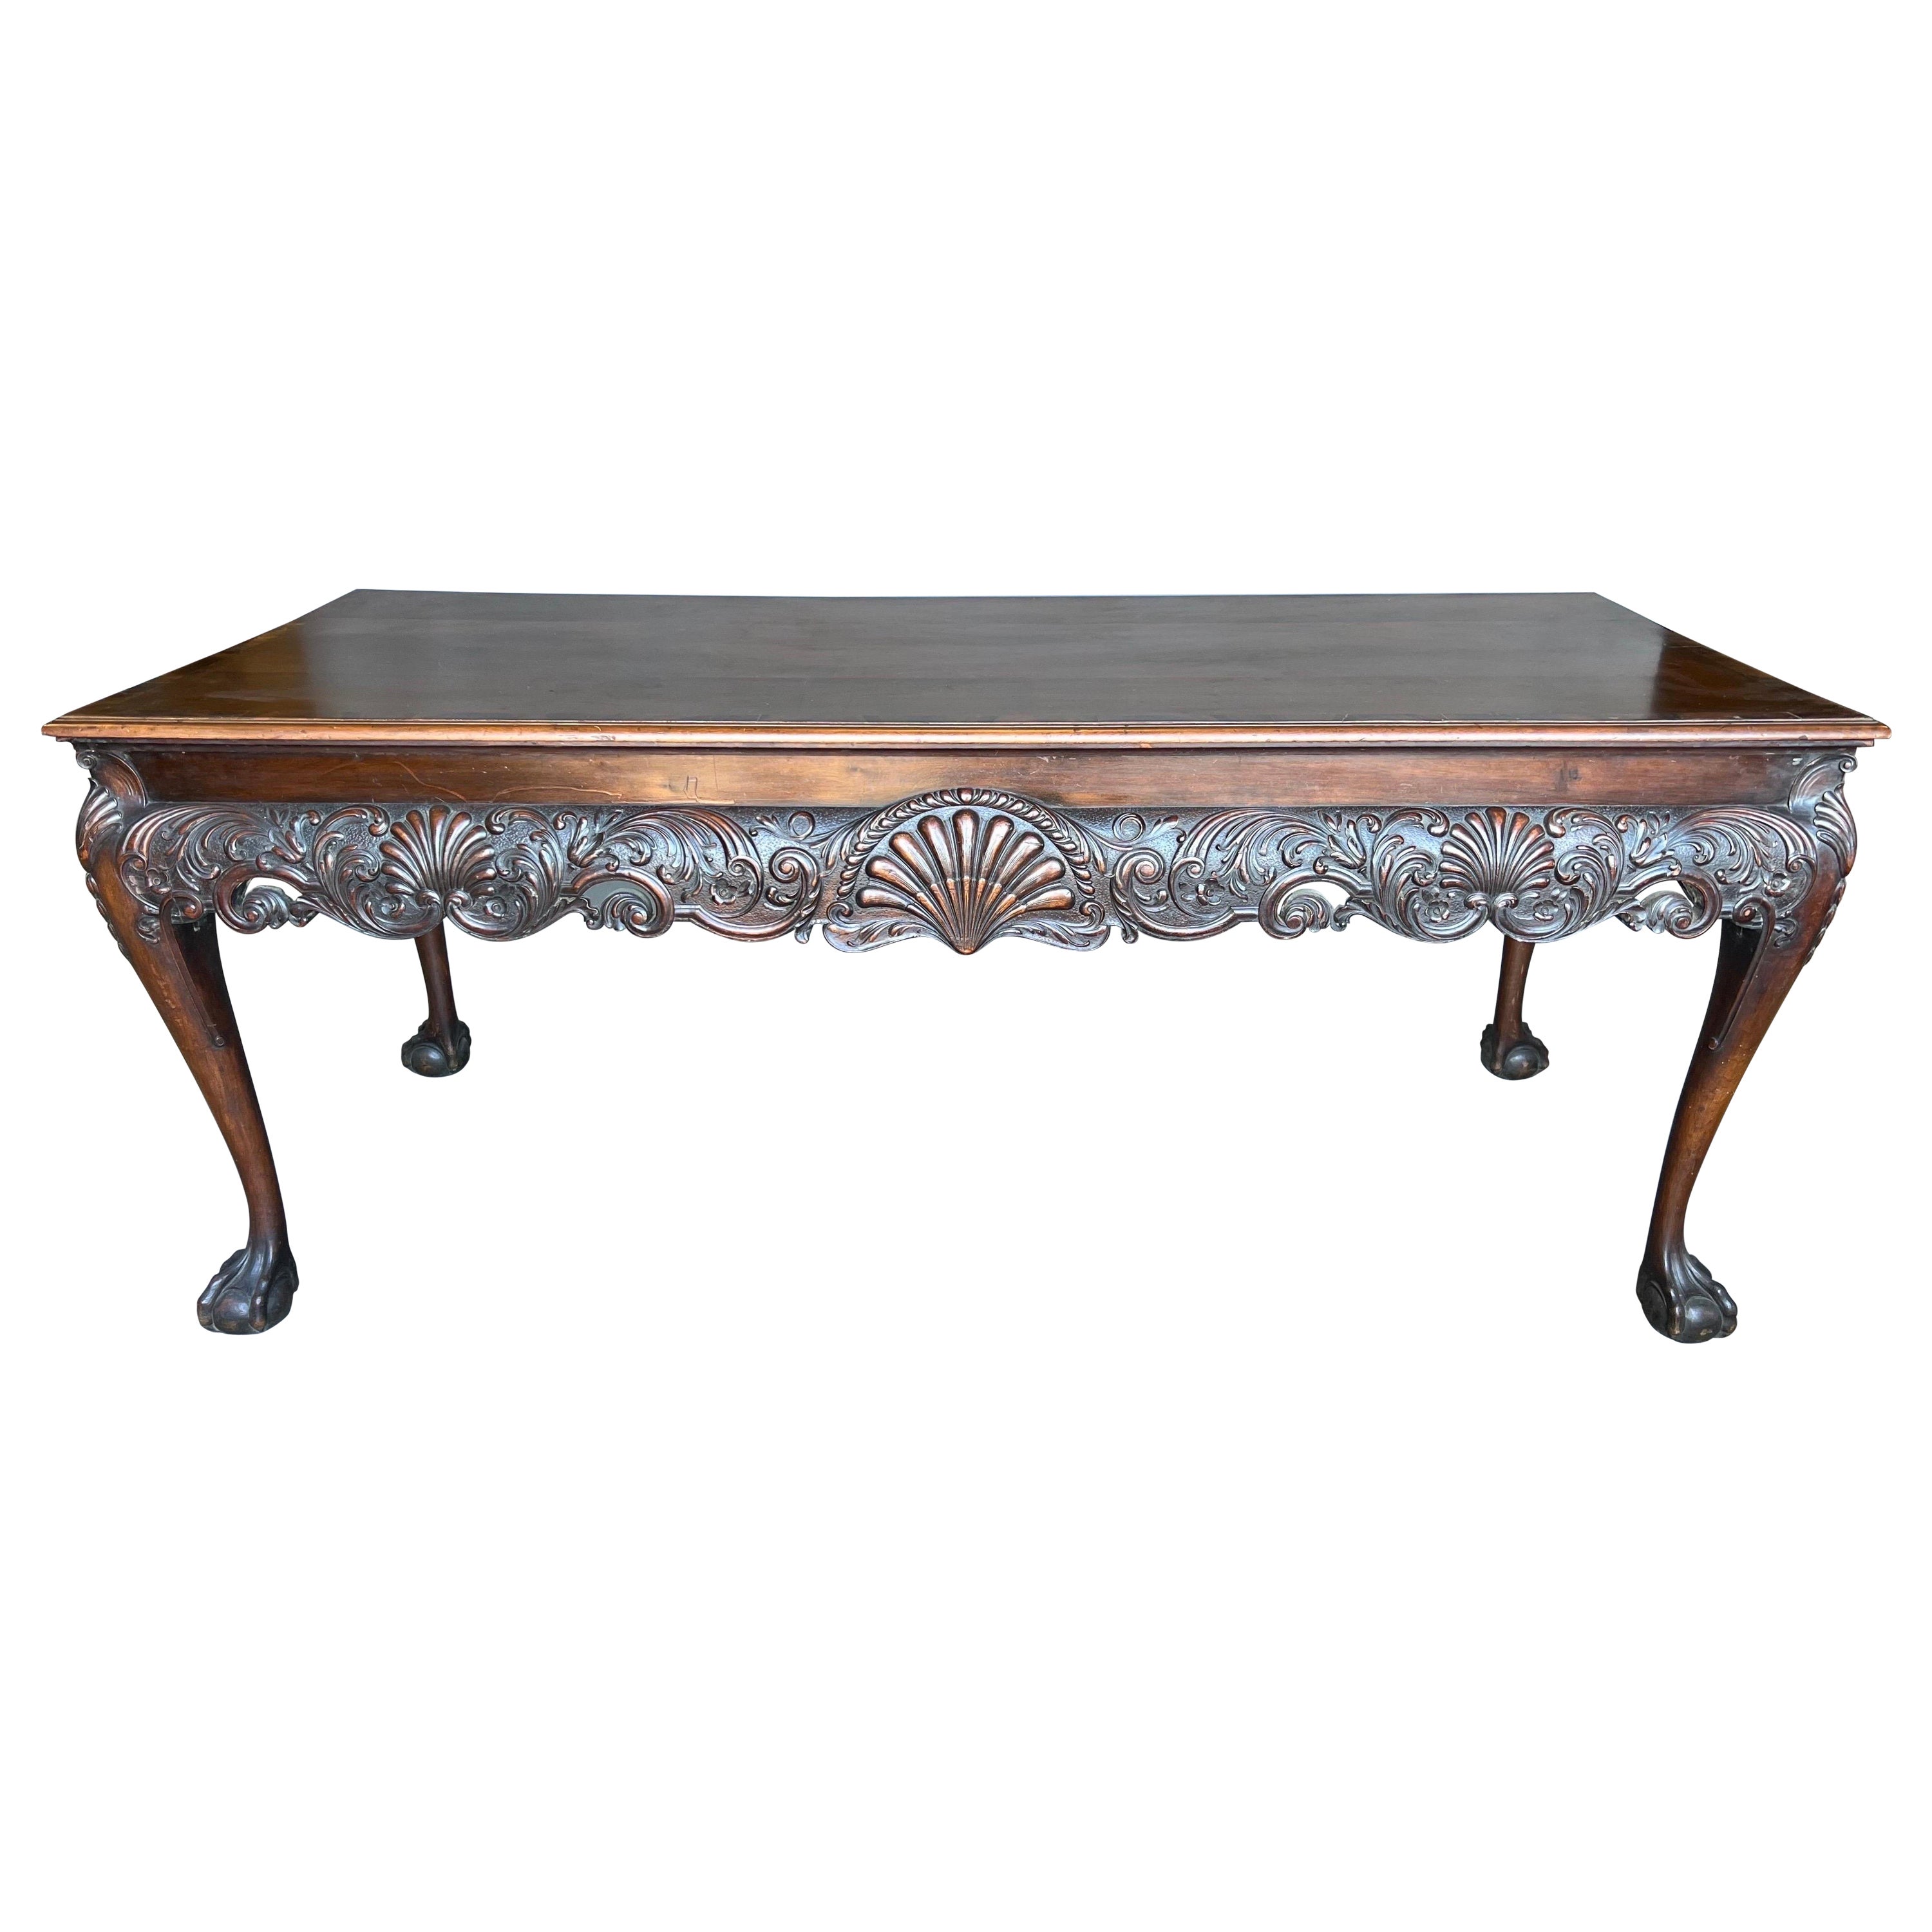 Très belle table console en acajou du 19ème siècle estampillée Gillows